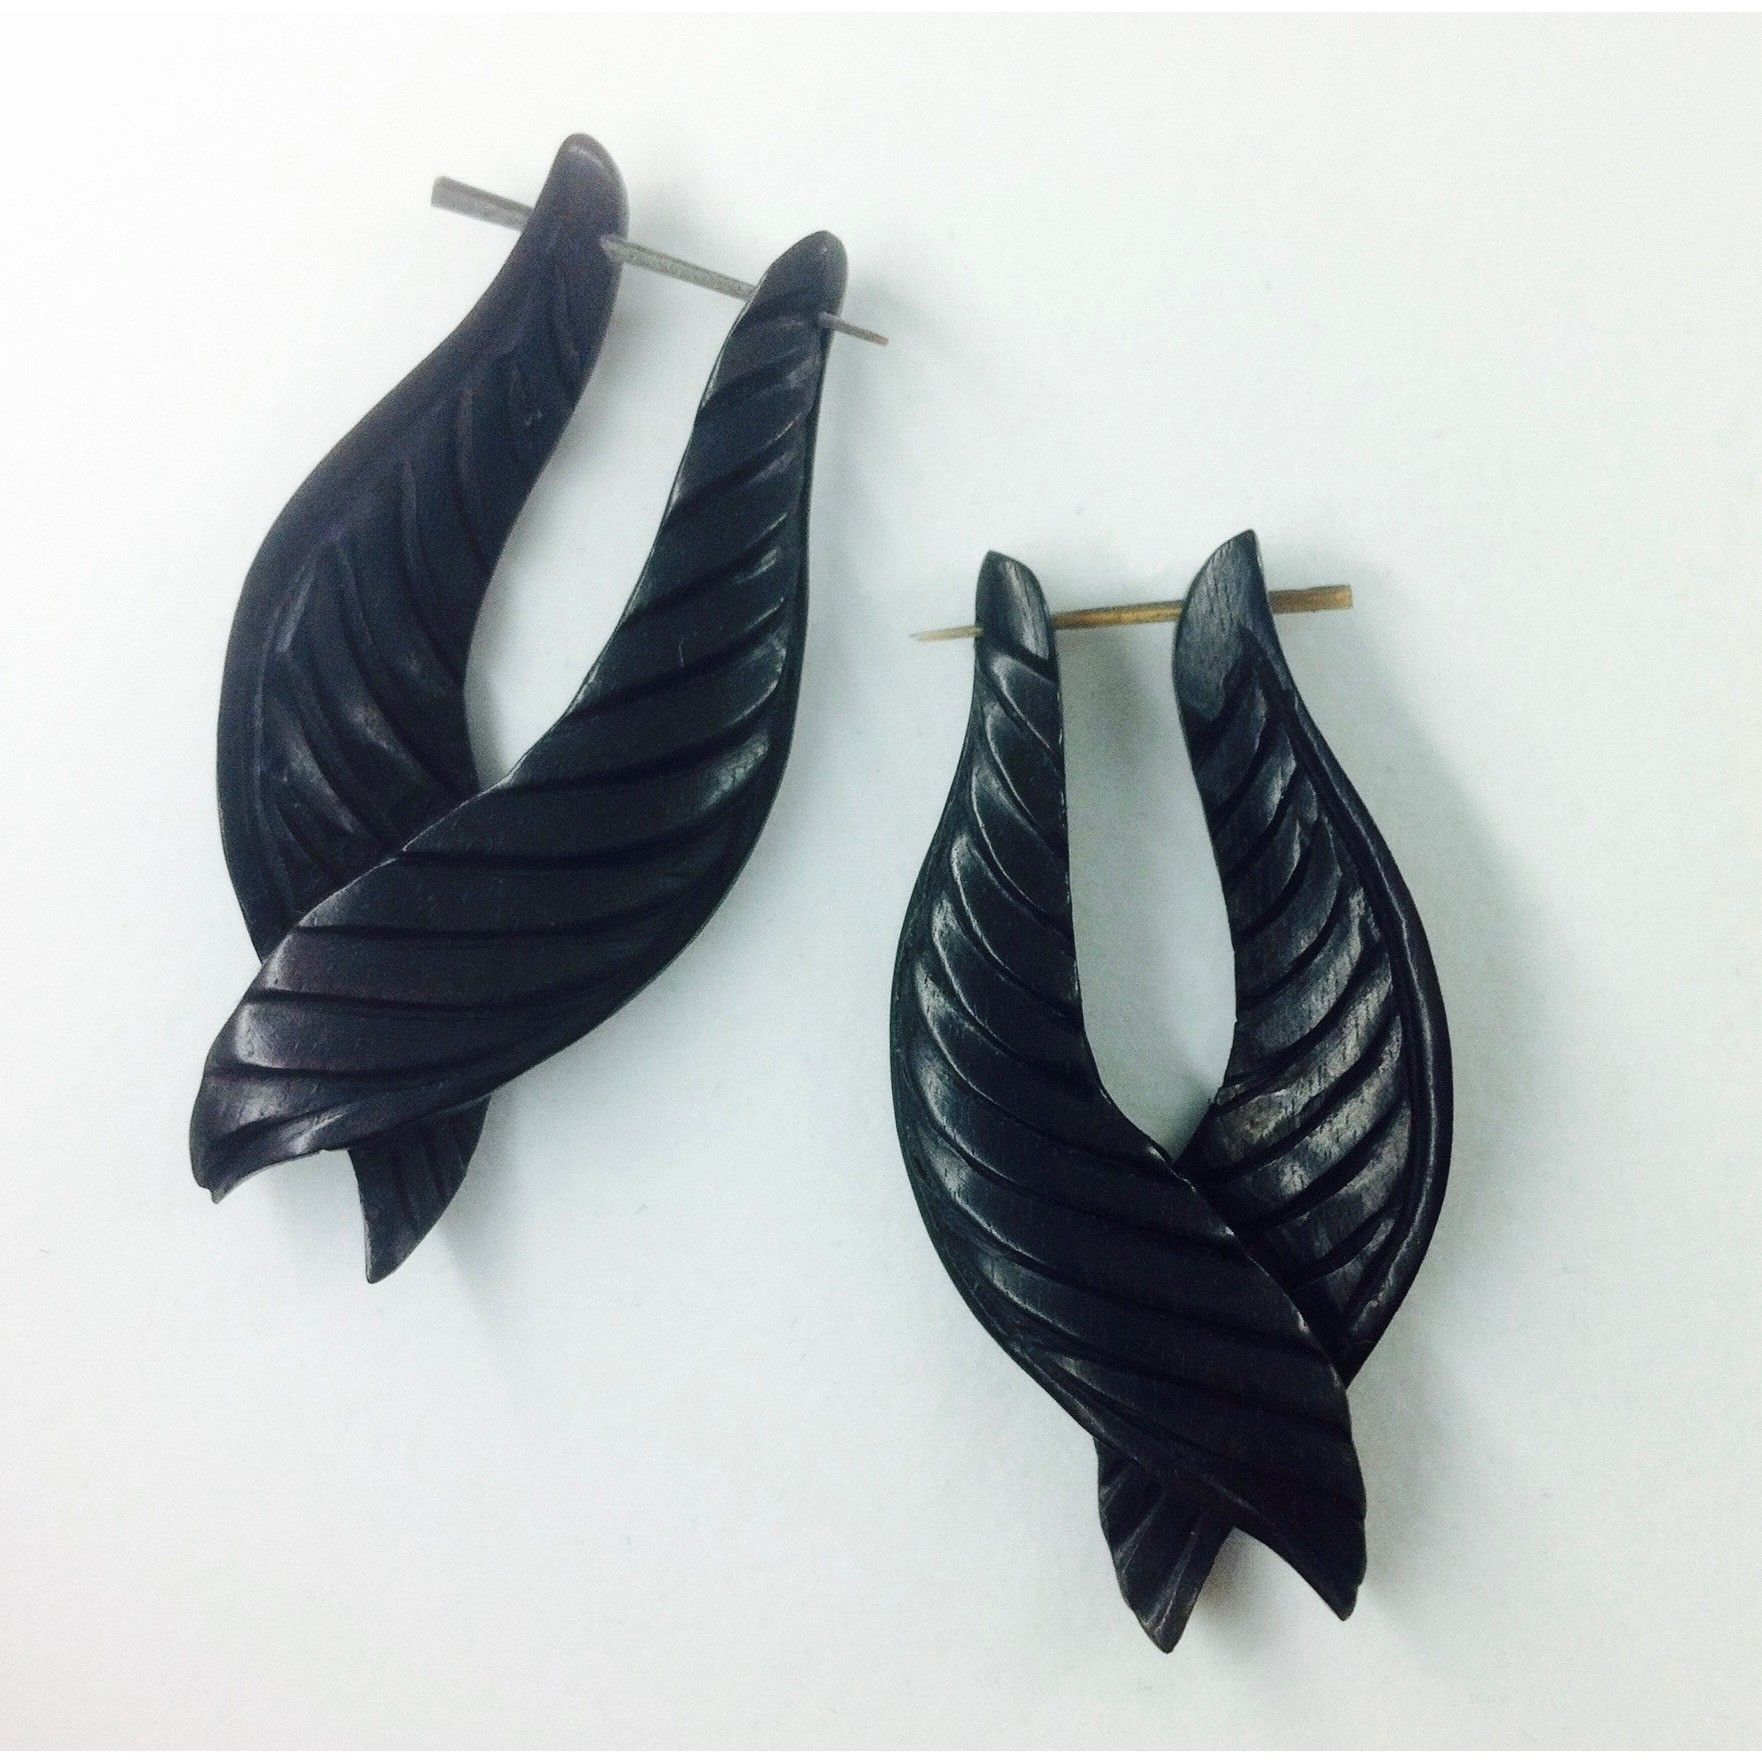 Black Earrings :|: Black Feathers. Wooden Earrings.